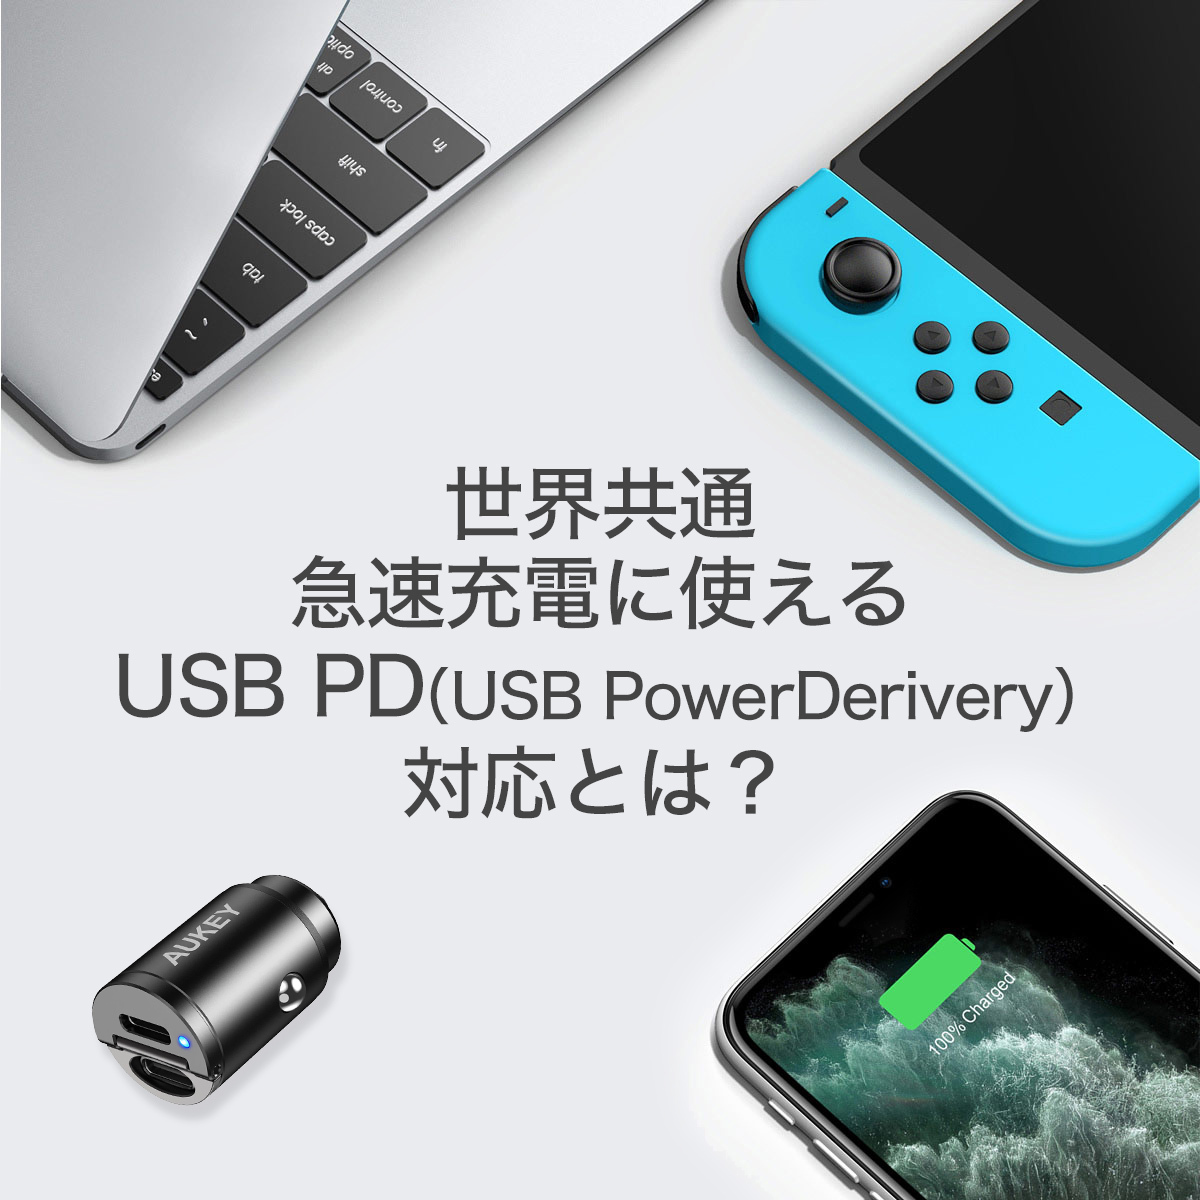 世界共通急速充電に使える　USB PD（USB PowerDerivery対応とは？